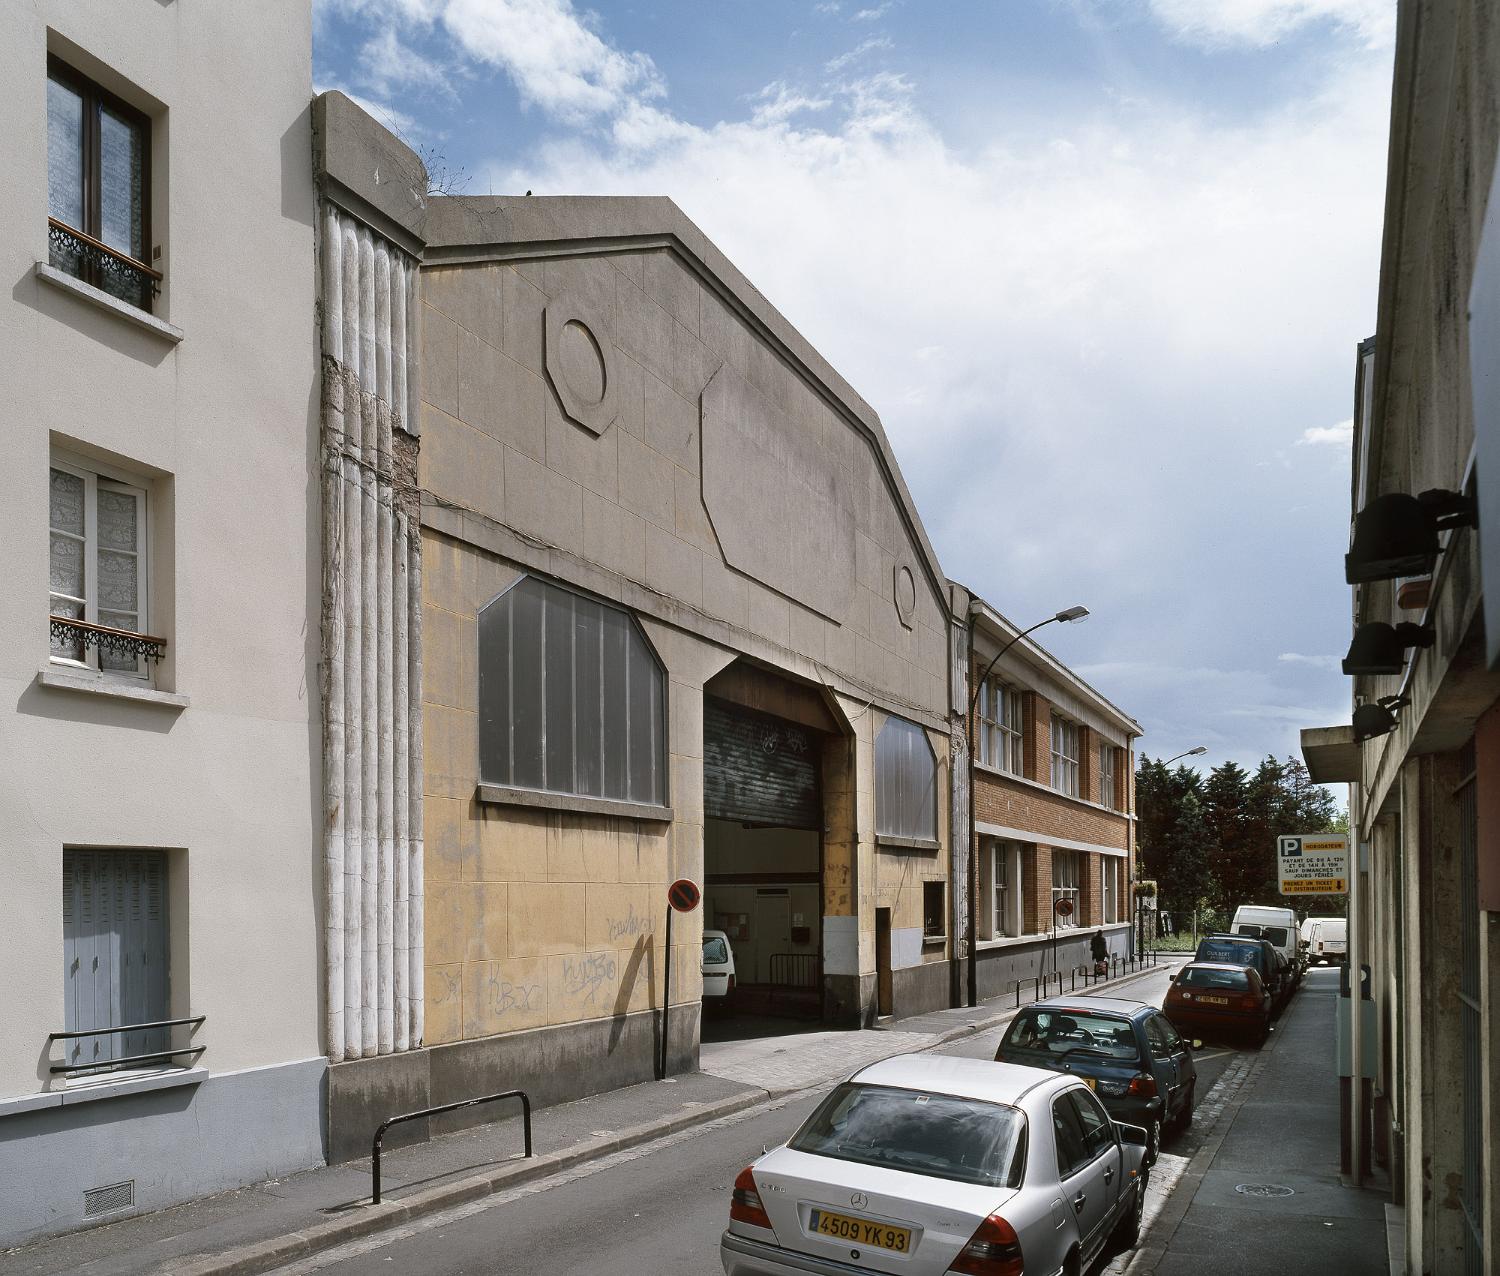 Entrepôt commercial Dupuydenus, puis entrepôt municipal (détruit après inventaire)